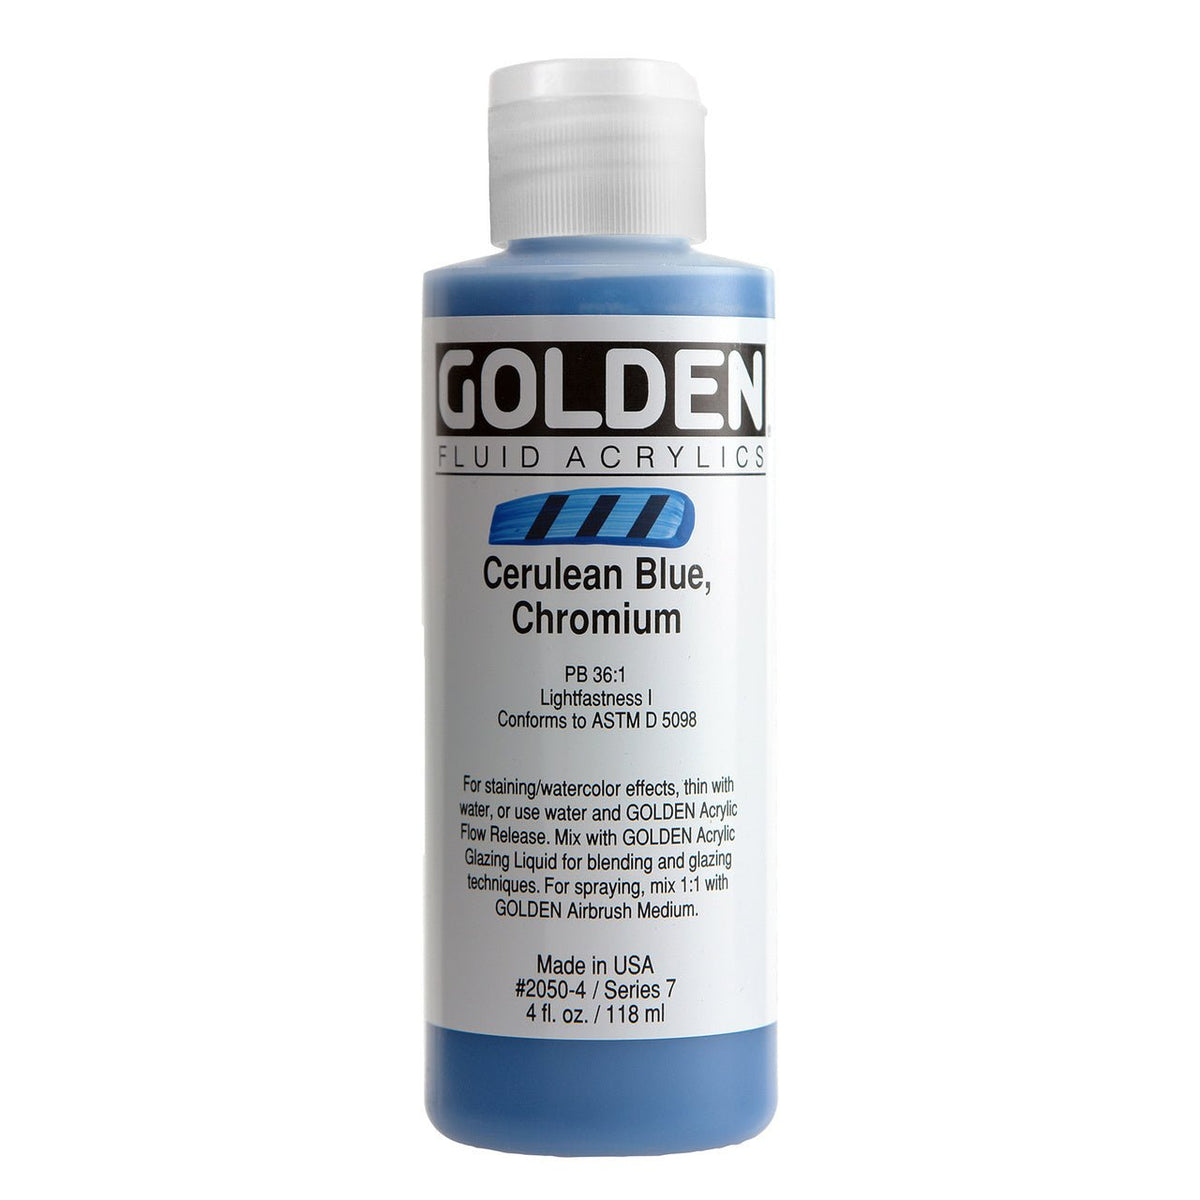 Golden Fluid Acrylic Cerulean Blue Chromium 4 oz - merriartist.com